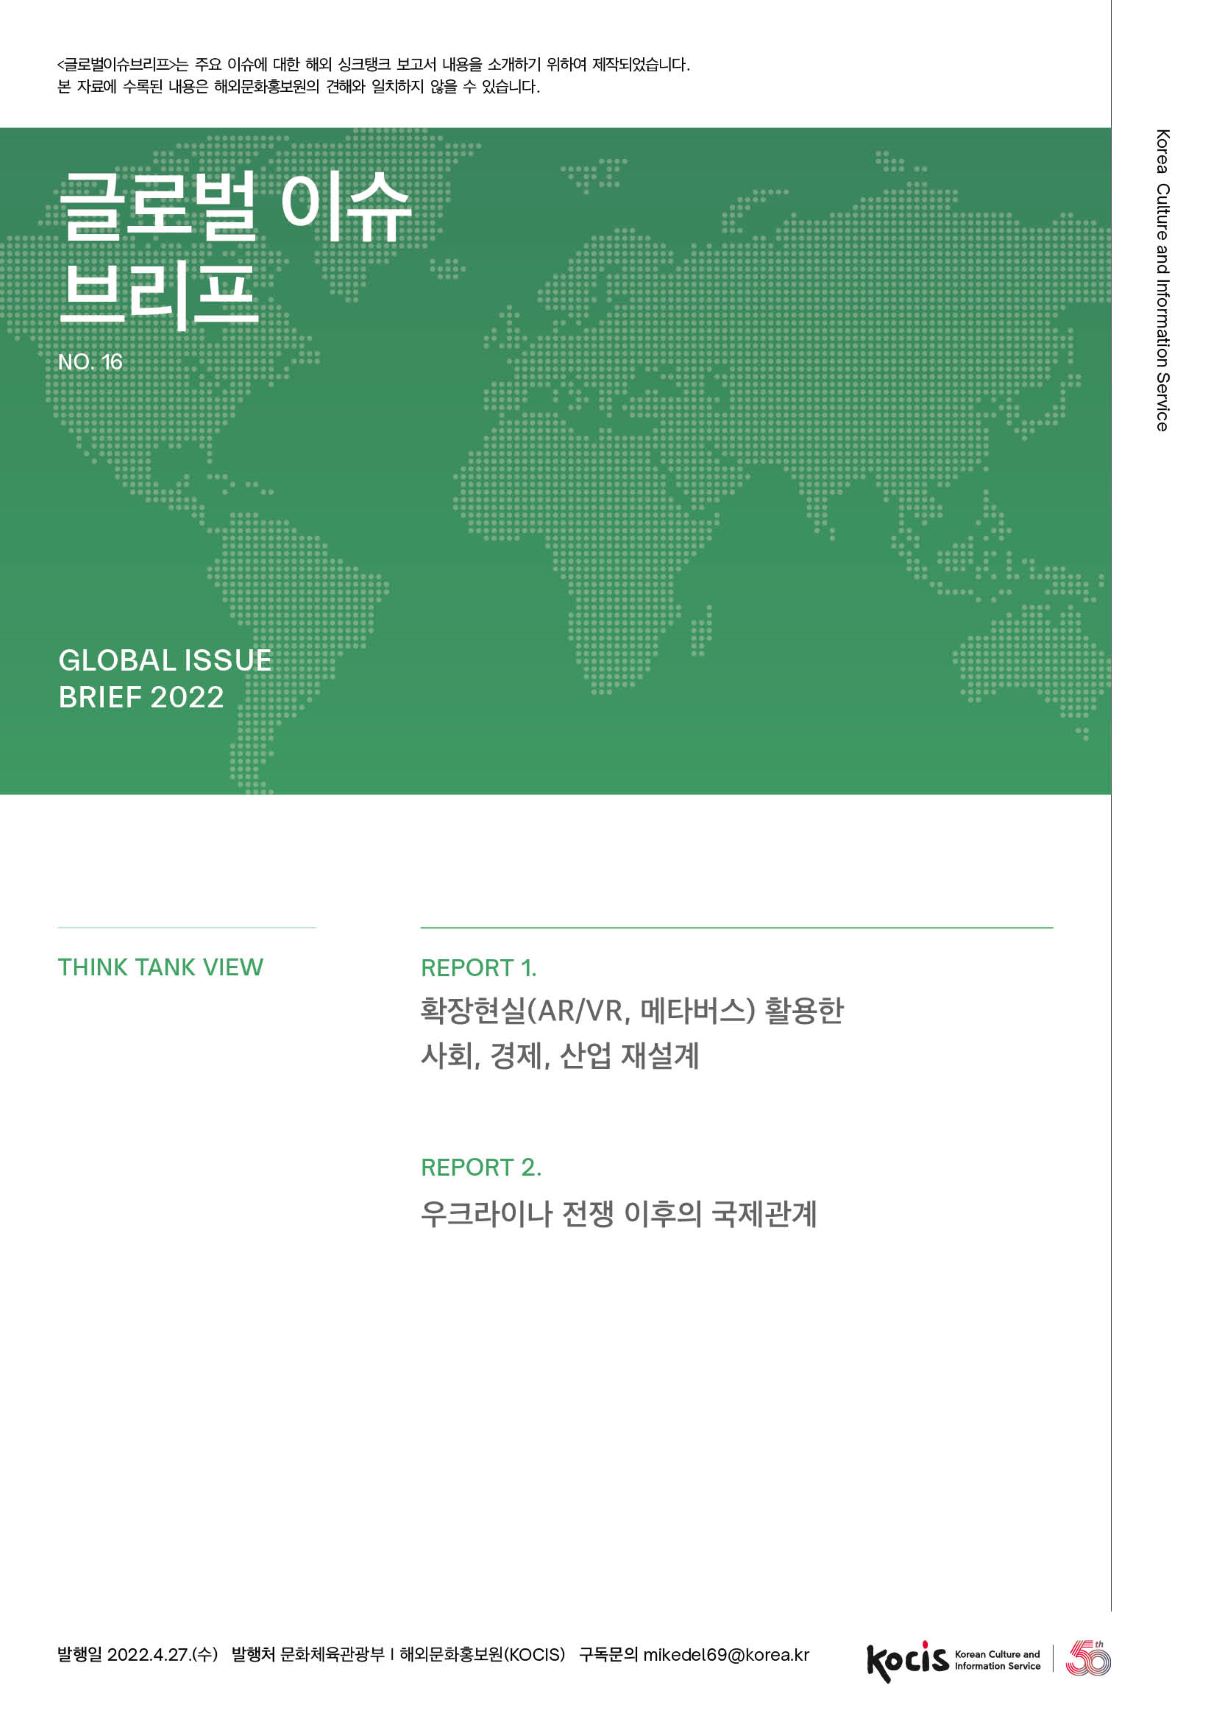 <글로벌이슈브리프는 주요 이슈에 대한 해외 싱크탱크 보고서 내용을 소개하기 위하여 제작되었습니다. 본 자료에 수록된 내용은 해외문화홍보원의 견해와 일치하지 않을 수 있습니다. 글로벌 이슈 | 브리프 Korea Culture and Information Service NO.16 GLOBAL ISSUE BRIEF 2022 THINK TANK VIEW REPORT 1. 확장현실(AR/VR, 메타버스) 활용한 사회, 경제, 산업 재설계 REPORT 2. 우크라이나 전쟁 이후의 국제관계 발행일 2022.4.27.(수) 발행처 문화체육관광부 | 해외문화홍보원(KOCIS) 구독문의 mikedel69@korea.kr I Korean Culture and Information Service